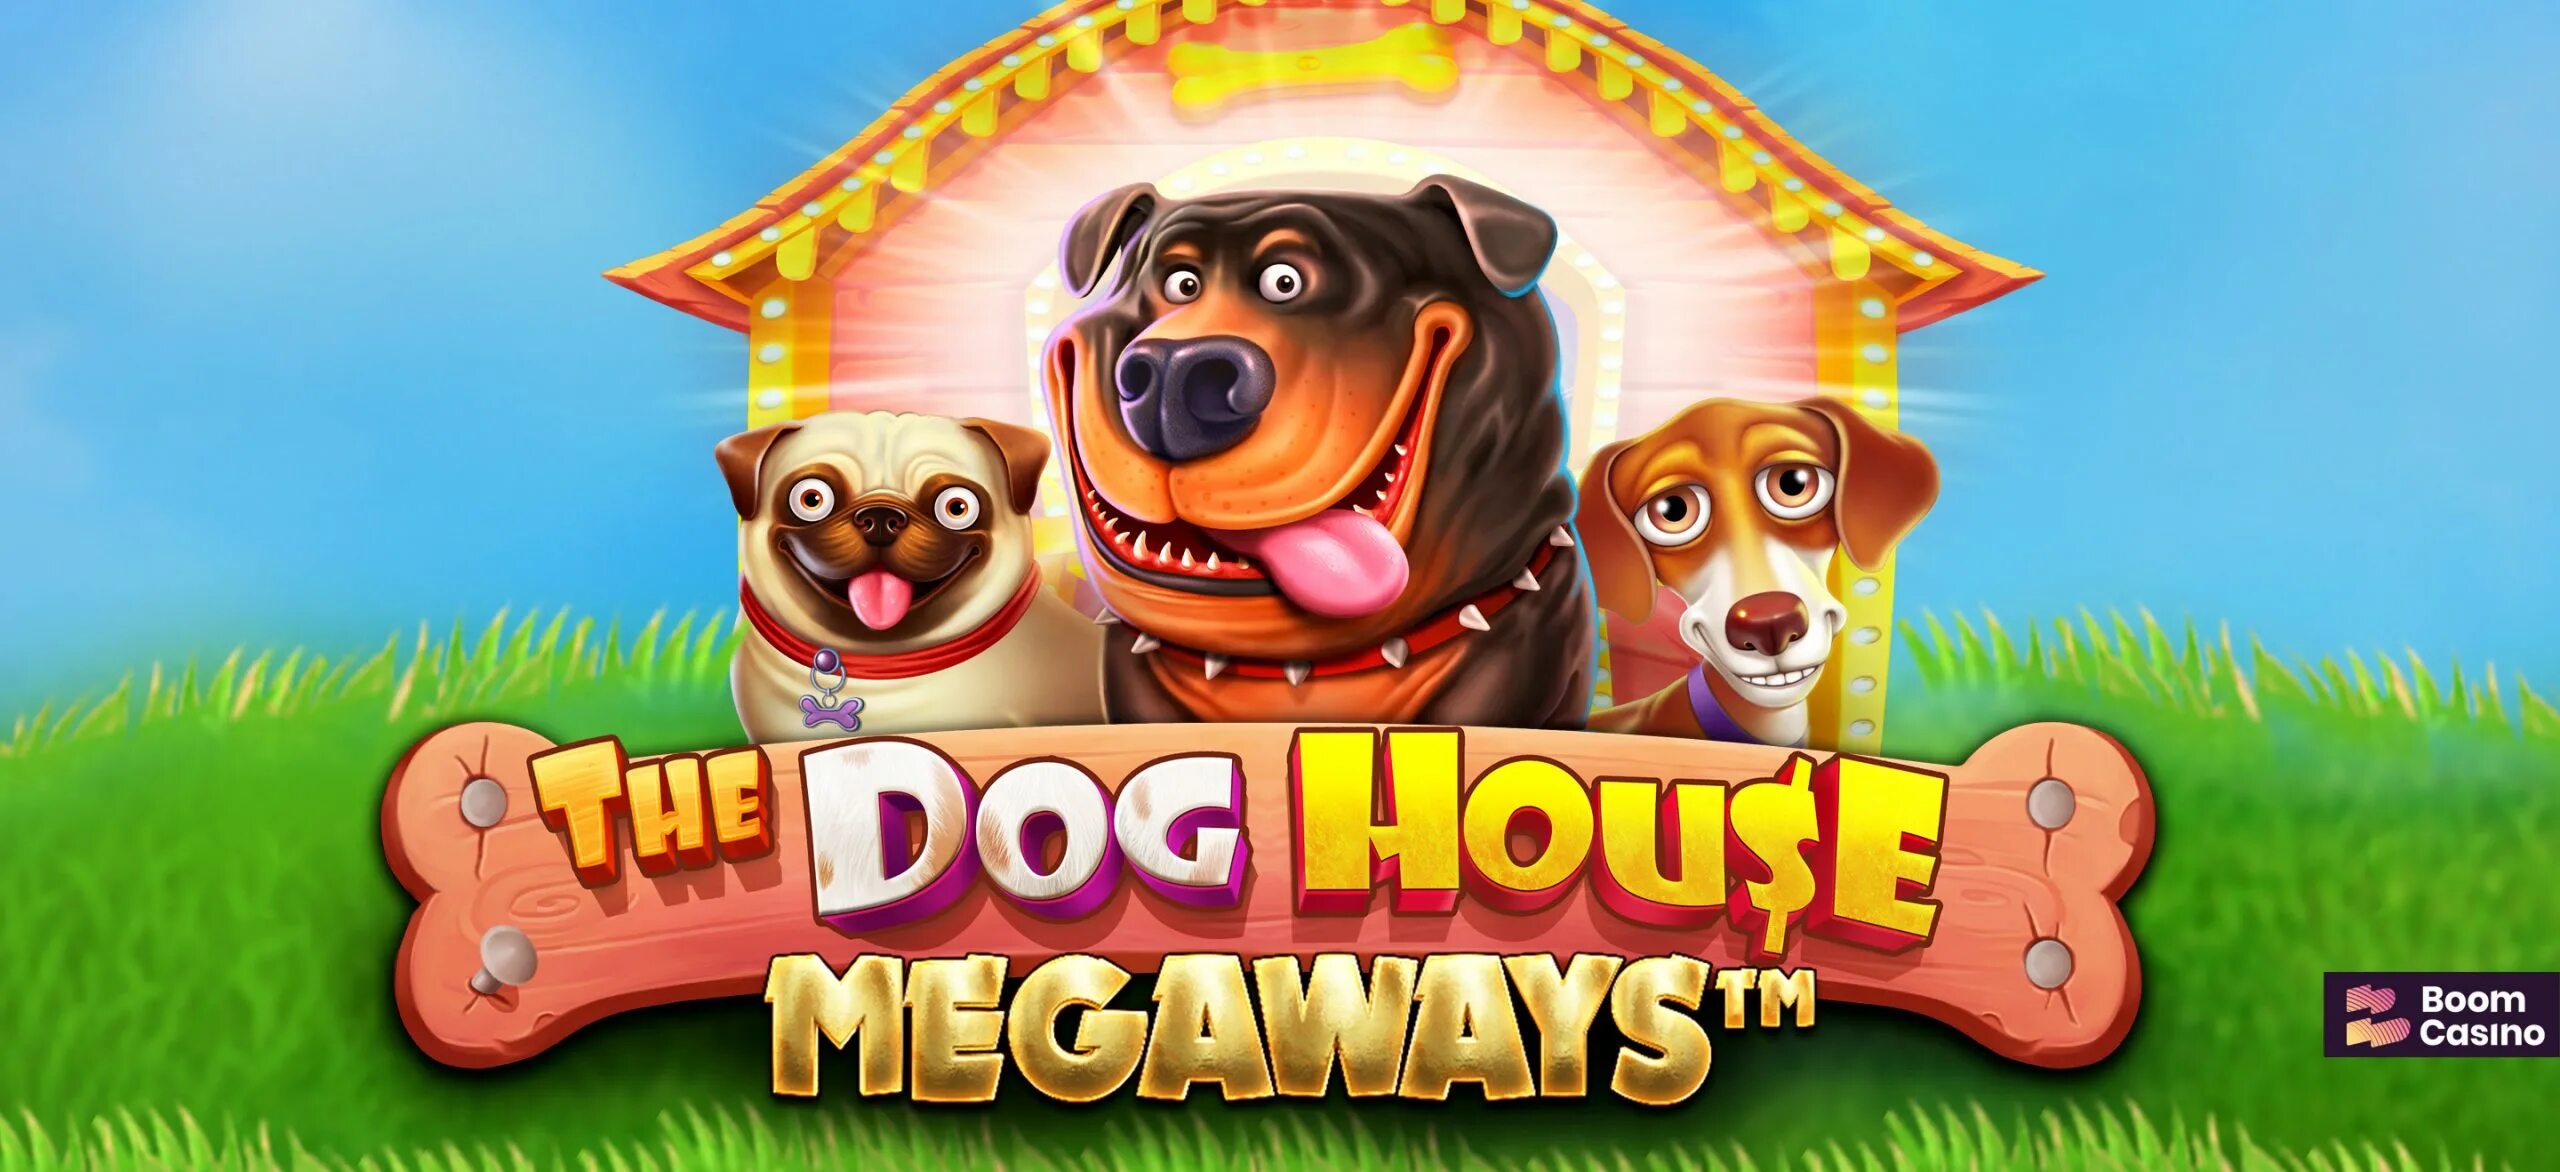 Слот дог хаус демо dog houses info. Дог Хаус слот. Dog House megaways. Слот Dog House megaways. Казино слот the Dog House.